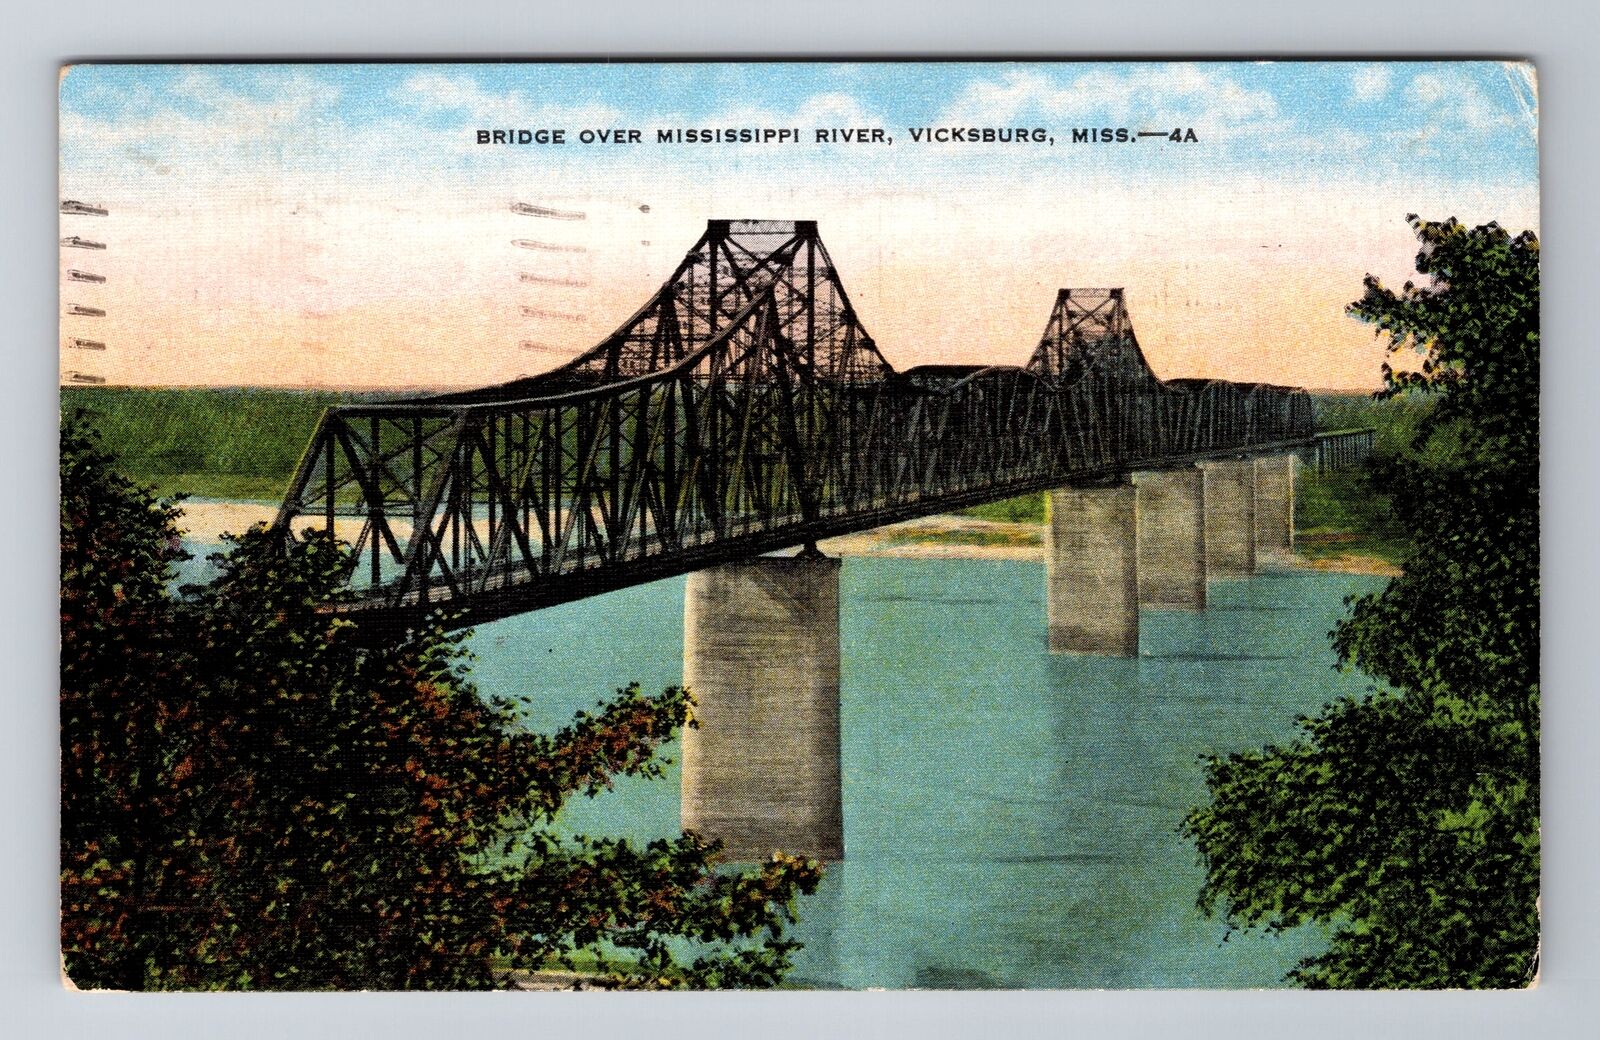 Vicksburg MS-Mississippi, Bridge over Mississippi River, c1951 Vintage Postcard